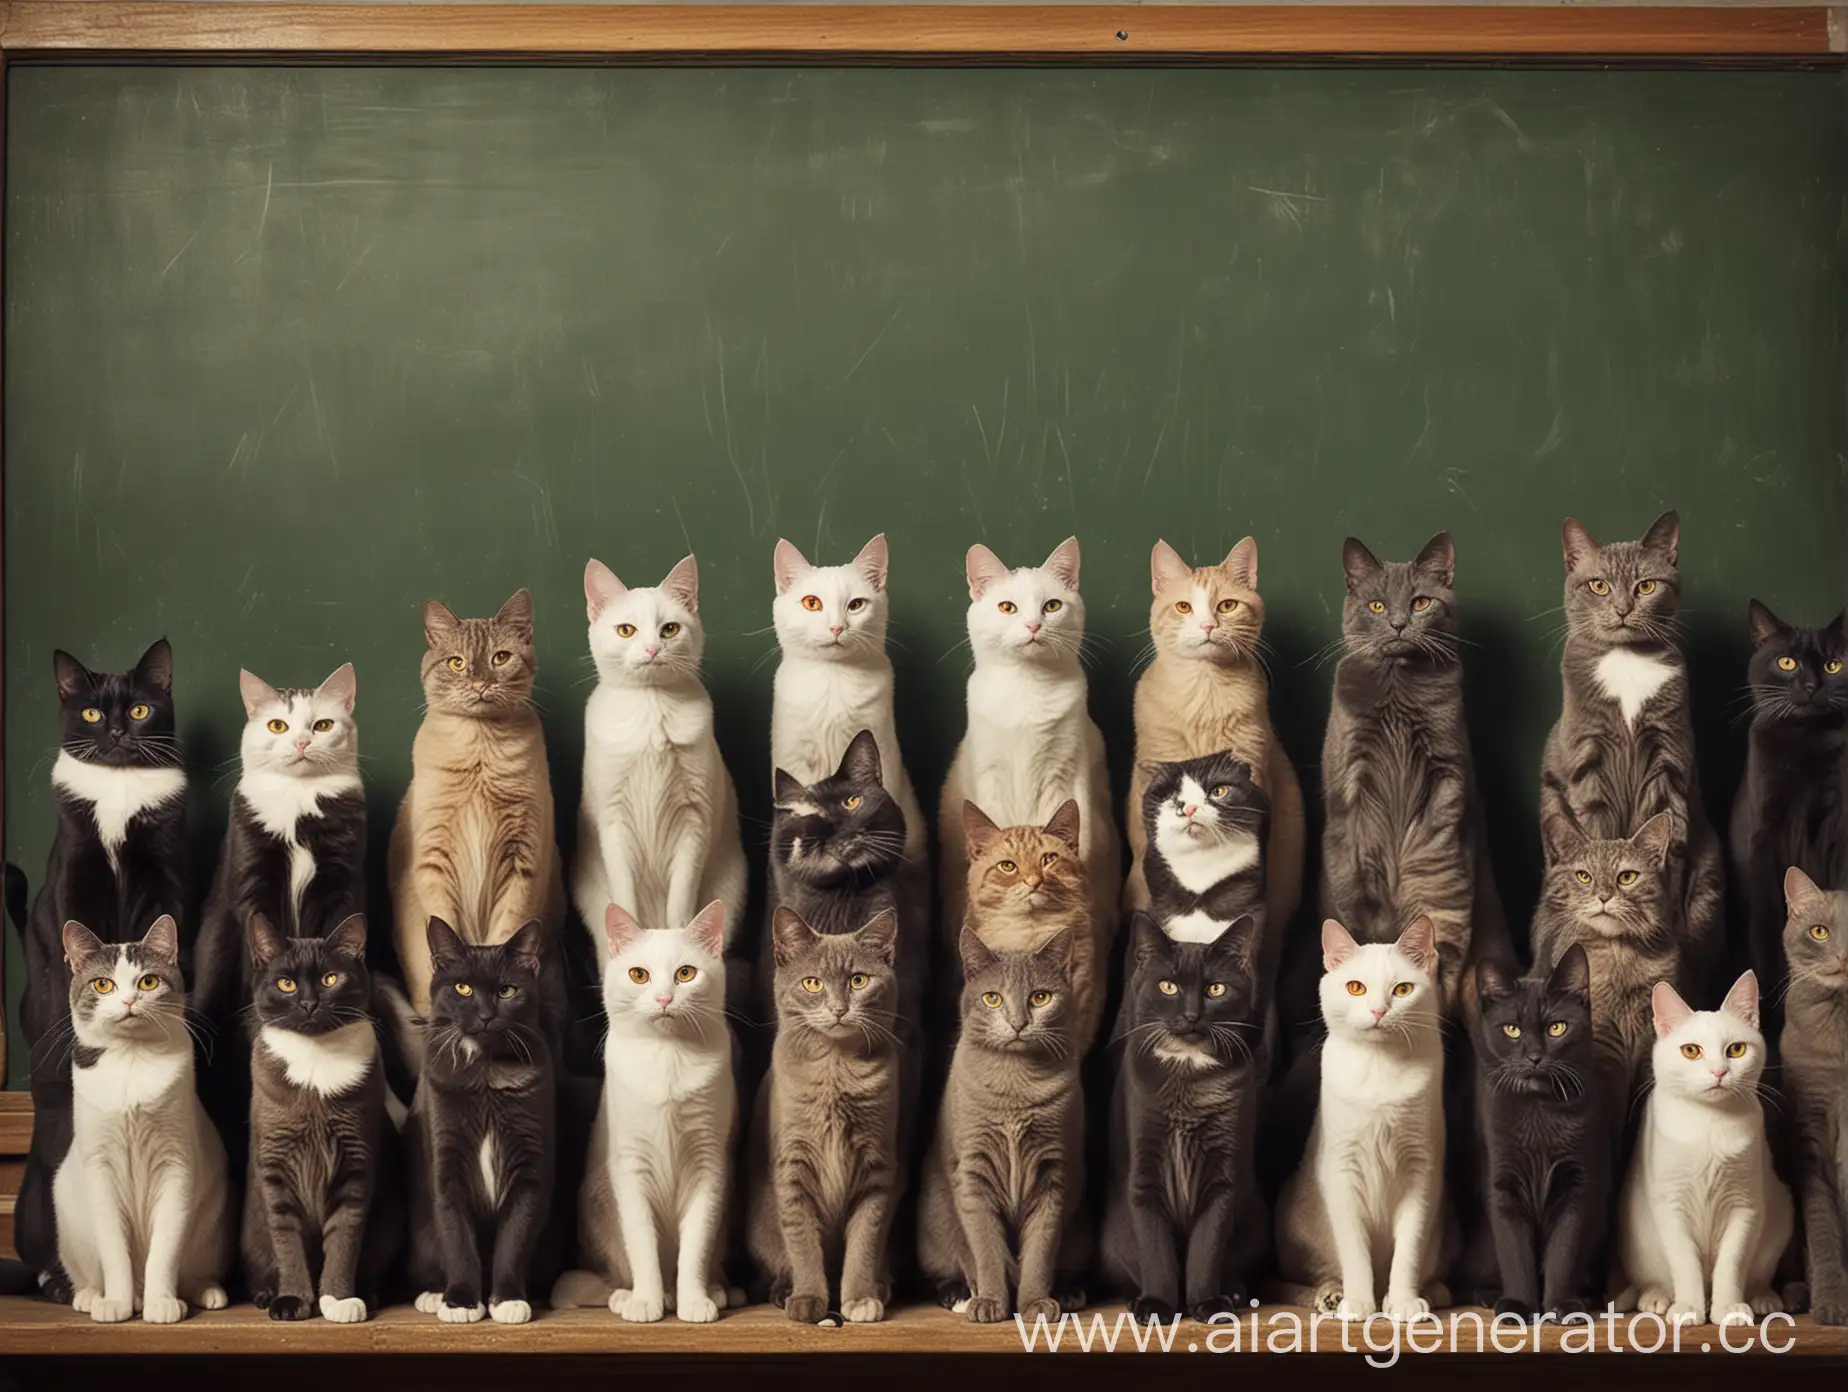 lo-fi коты учителя. 11 котов на расстоянии друг от друга на фоне школьной доски